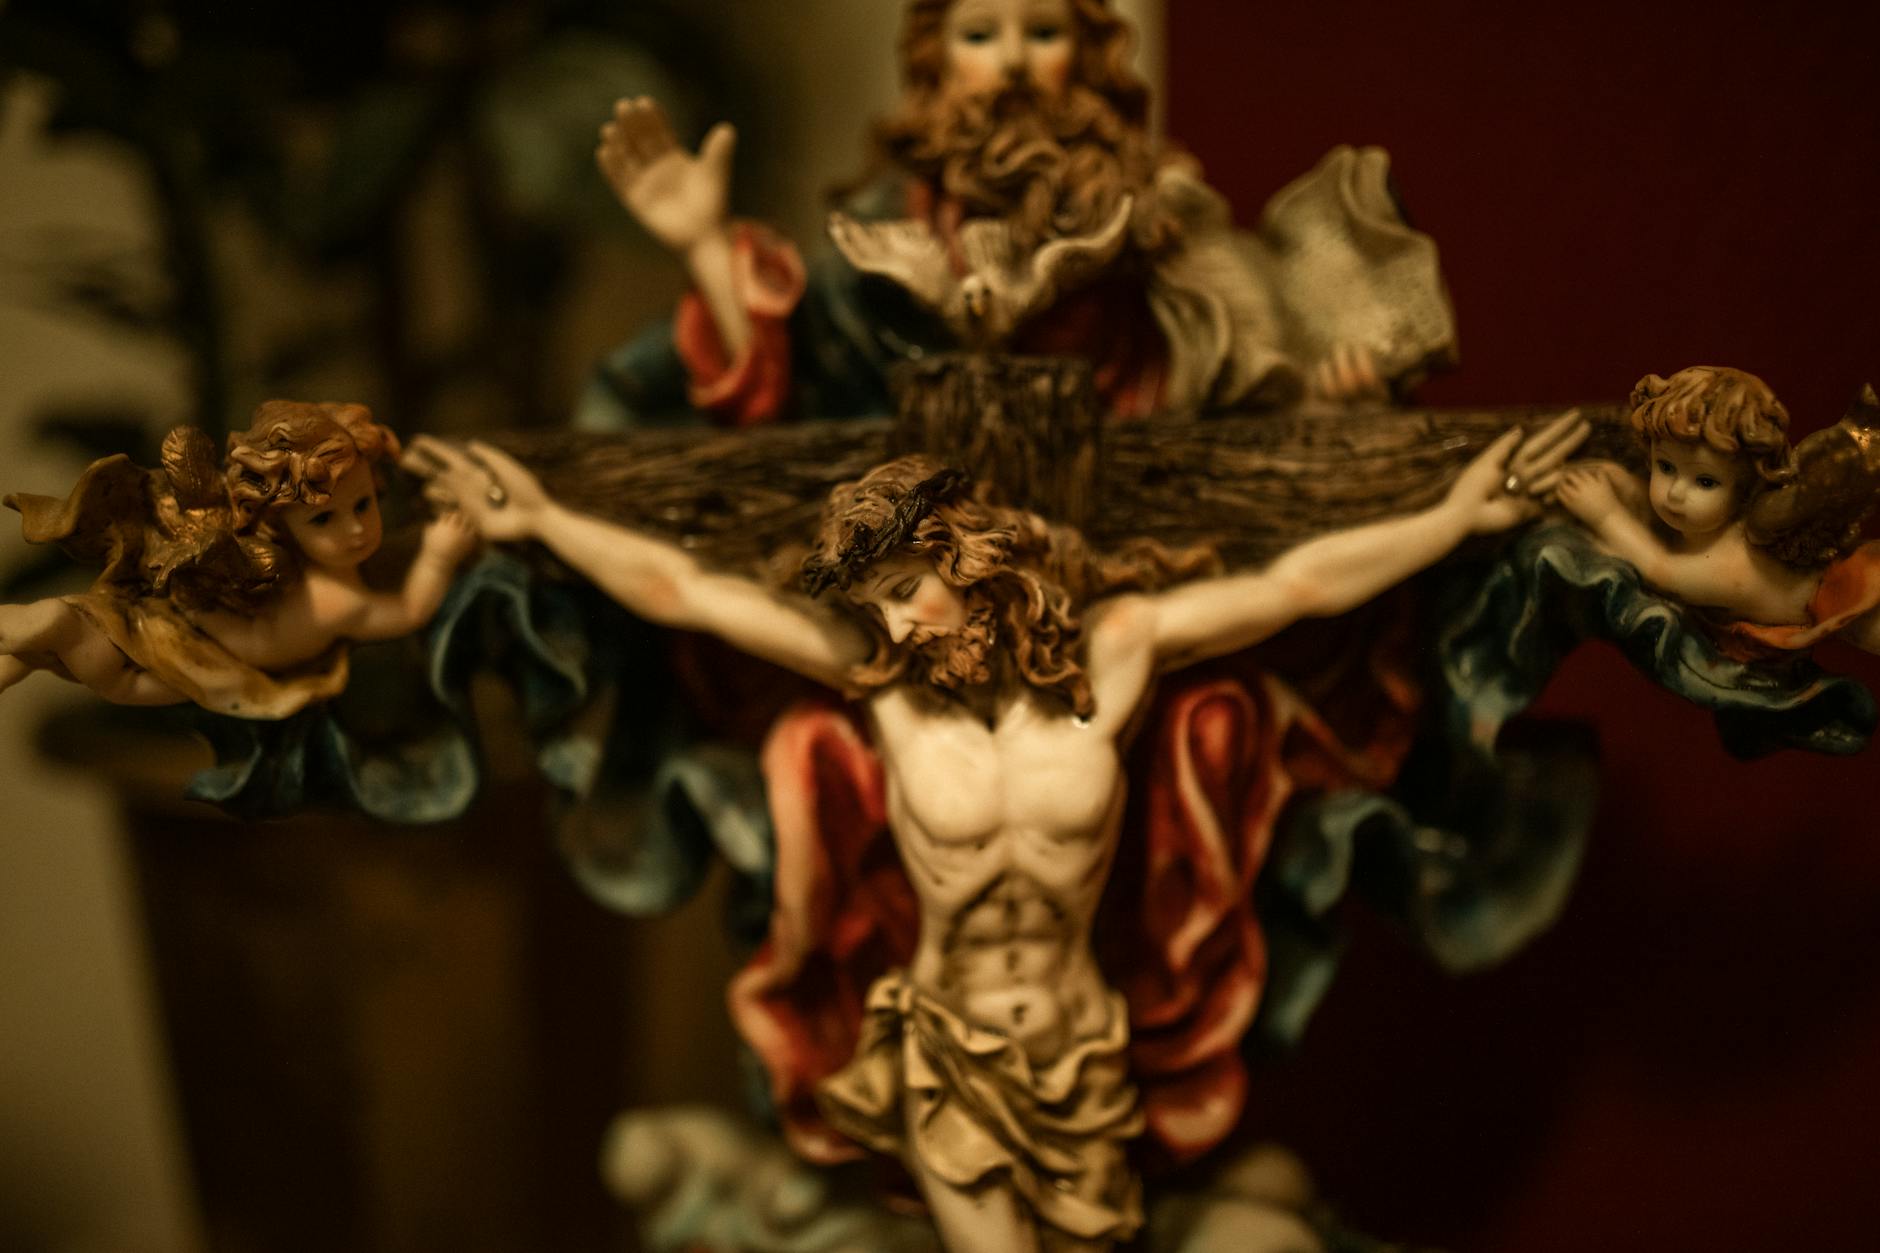 close up shot of a crucifix